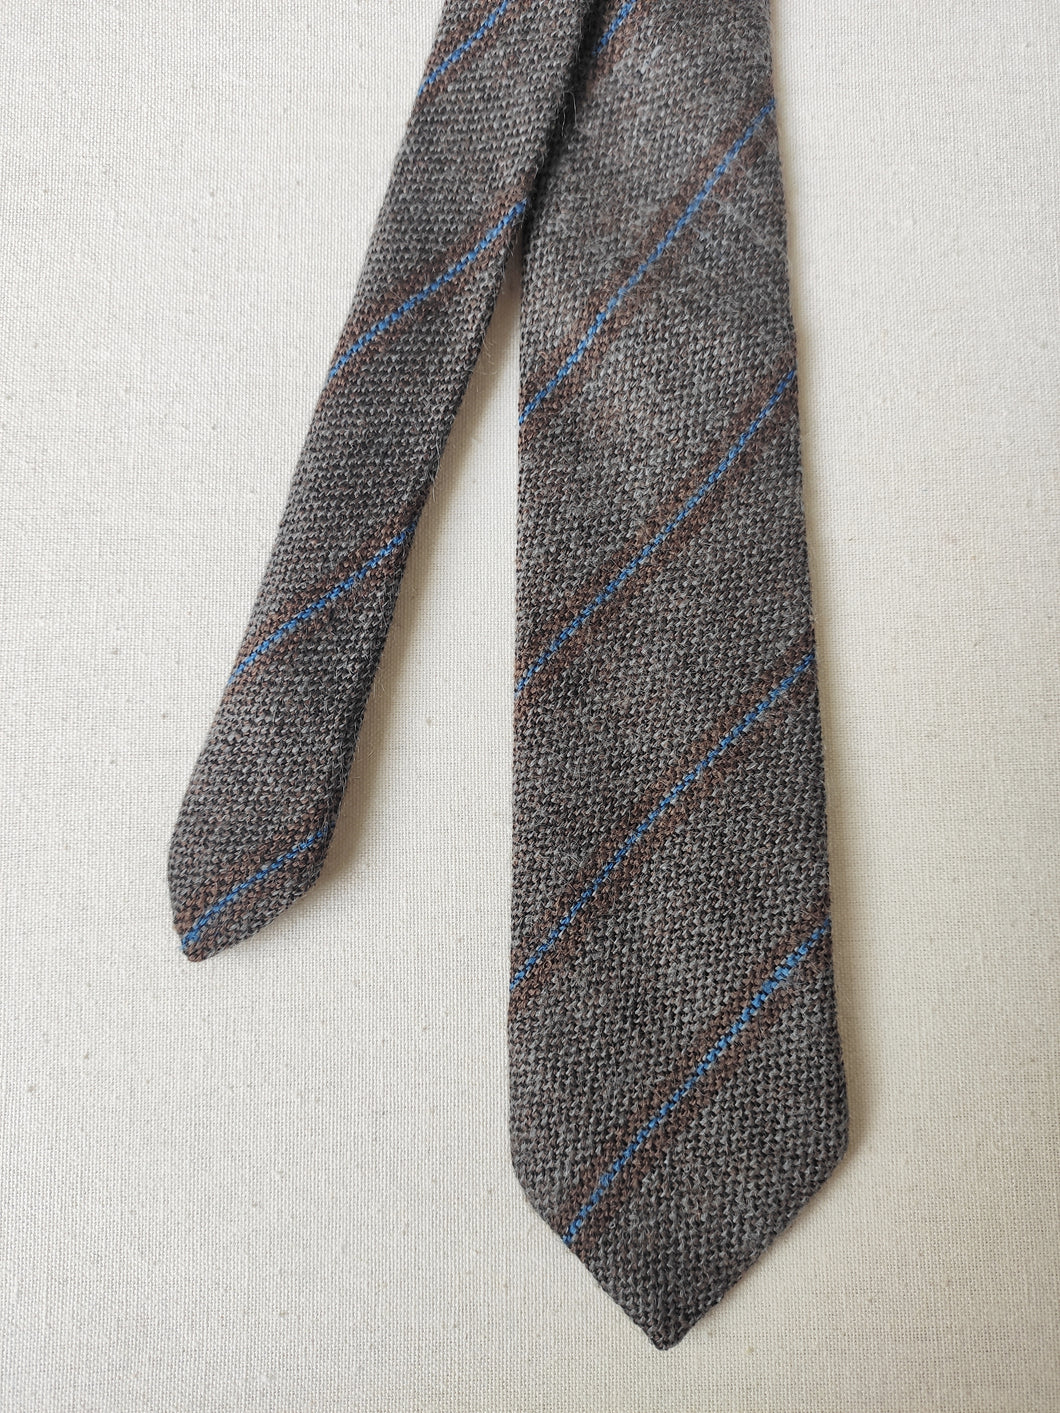 Missoni cravate cravate club en laine et mohair Made in Italy